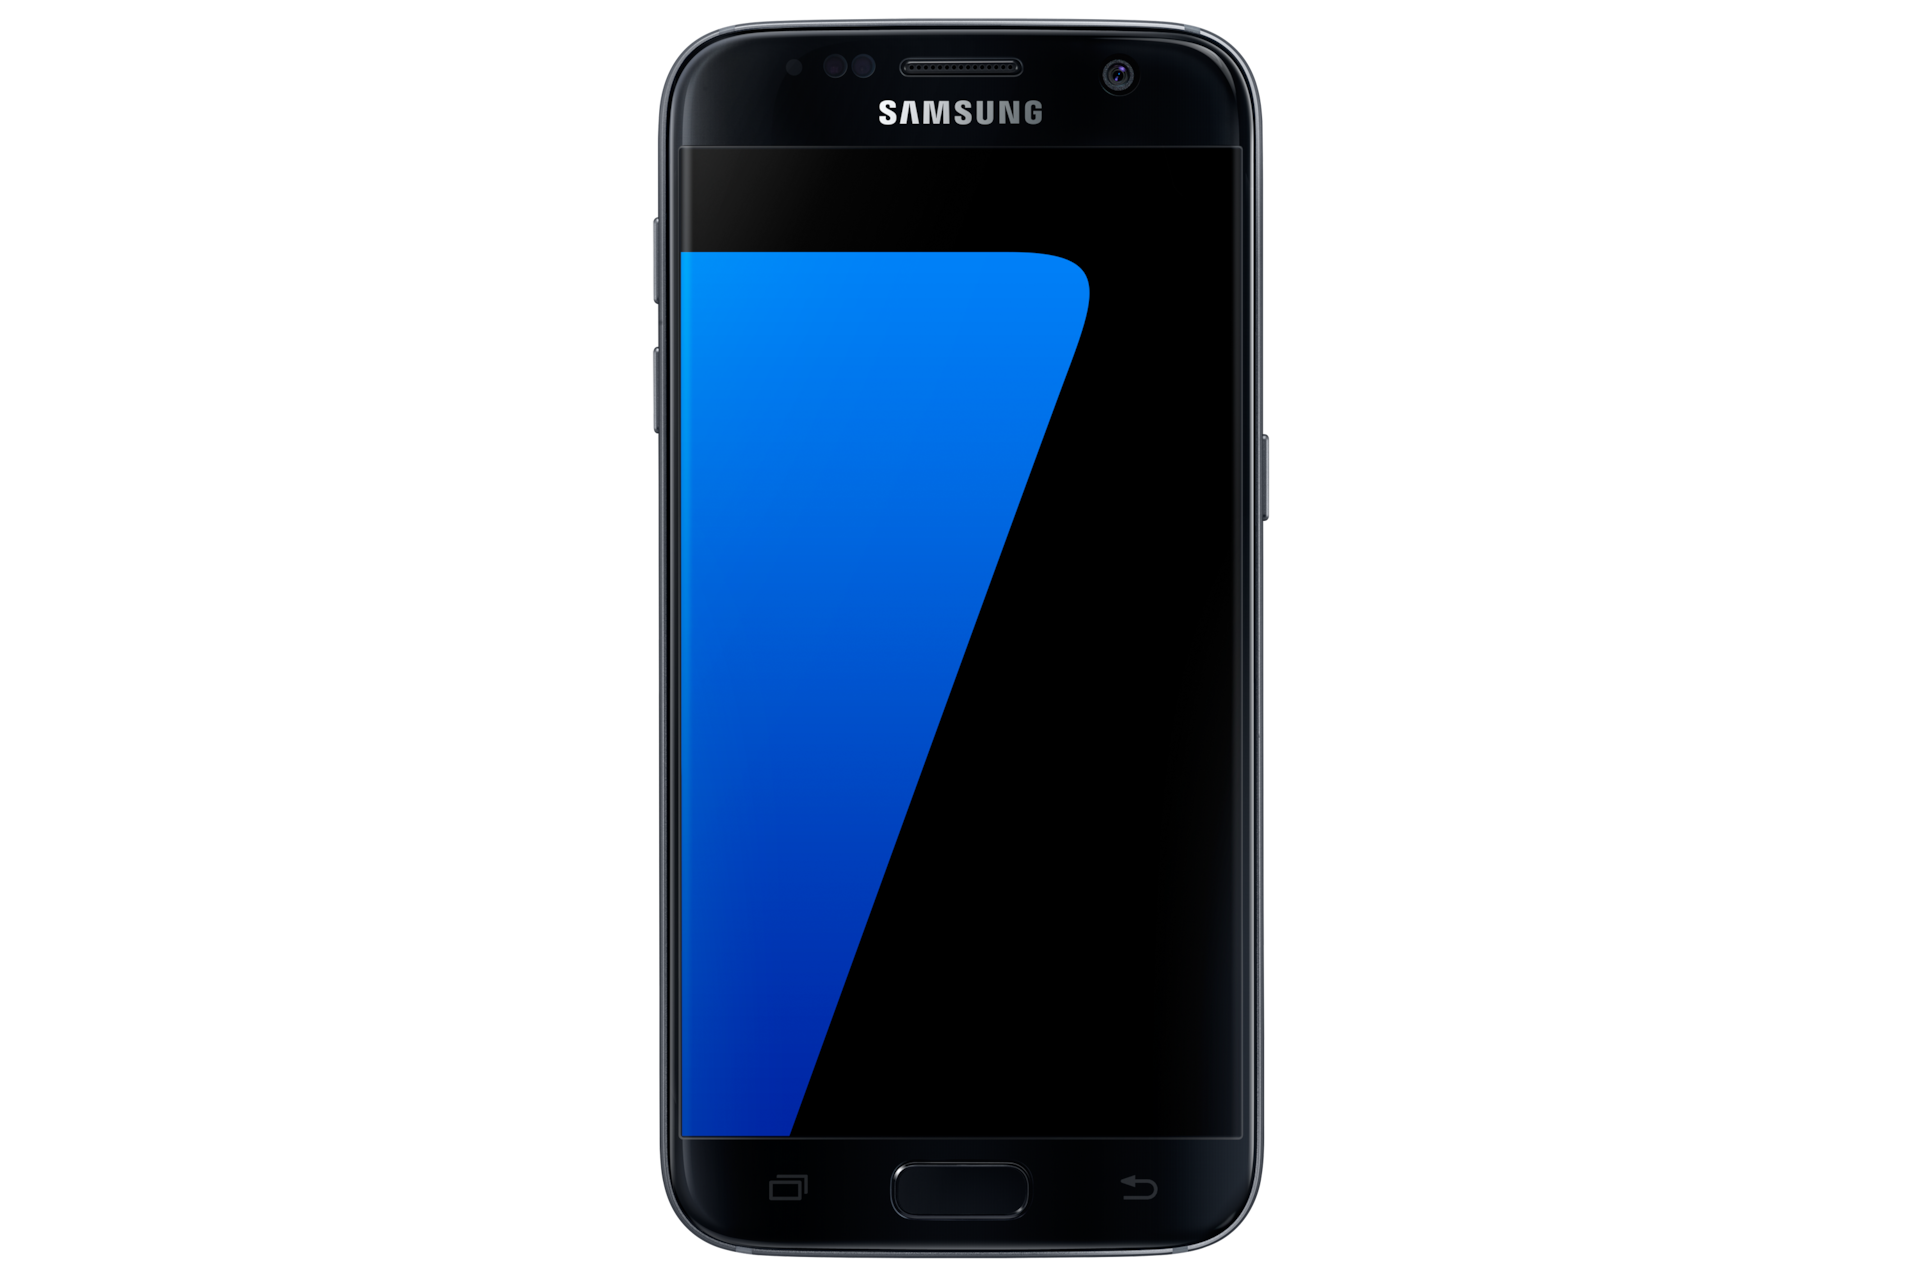 Kup Smartfon Galaxy S7 Czarny Cena I Oferty Samsung Polska